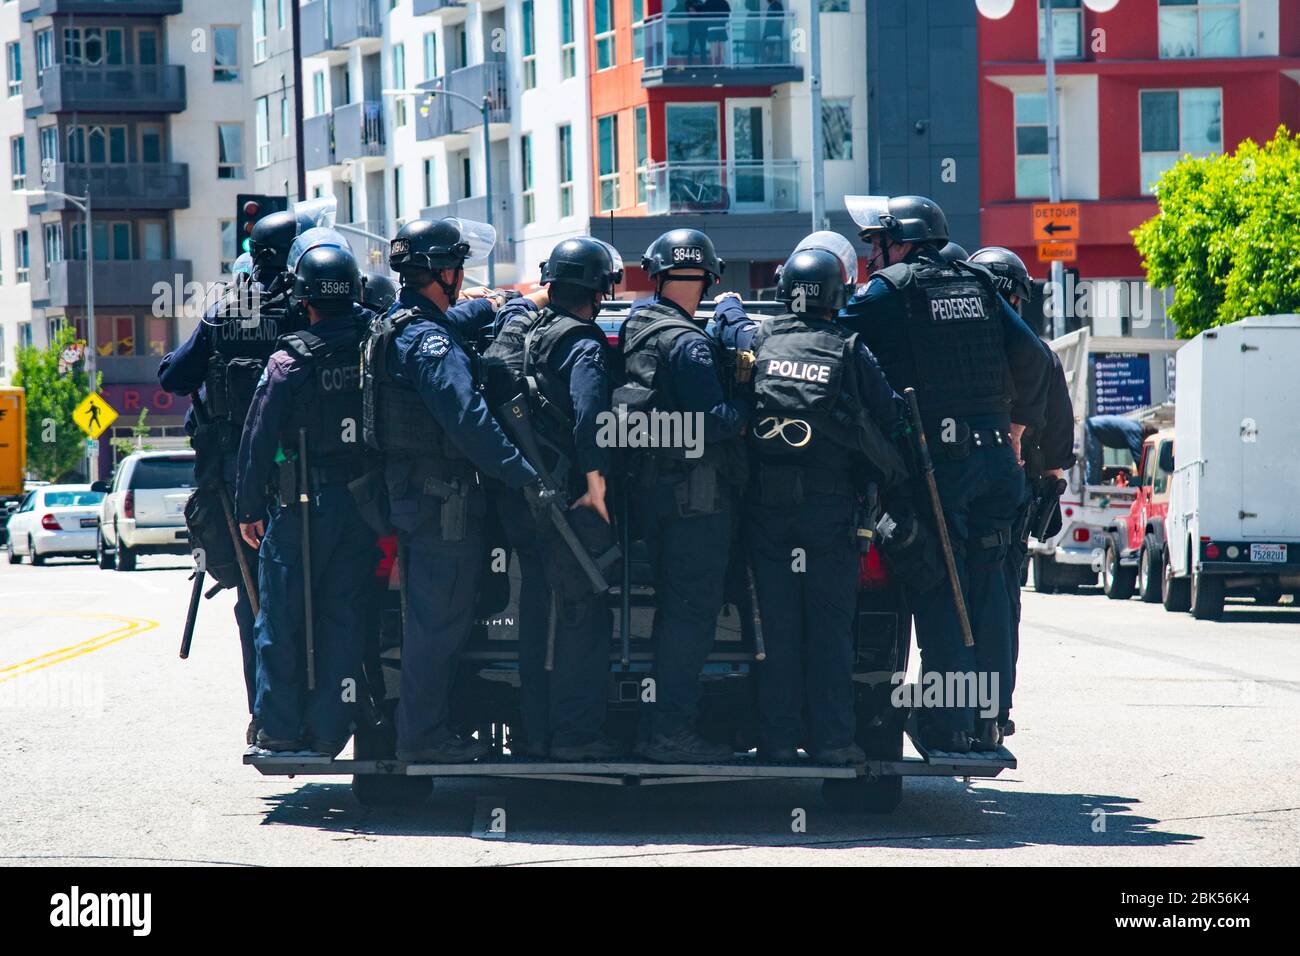 La polizia si prepara per un giro di disordini civili in un veicolo di polizia durante una protesta Black Lives Matter a Los Angeles durante l'epidemia di Coronavirus Foto Stock